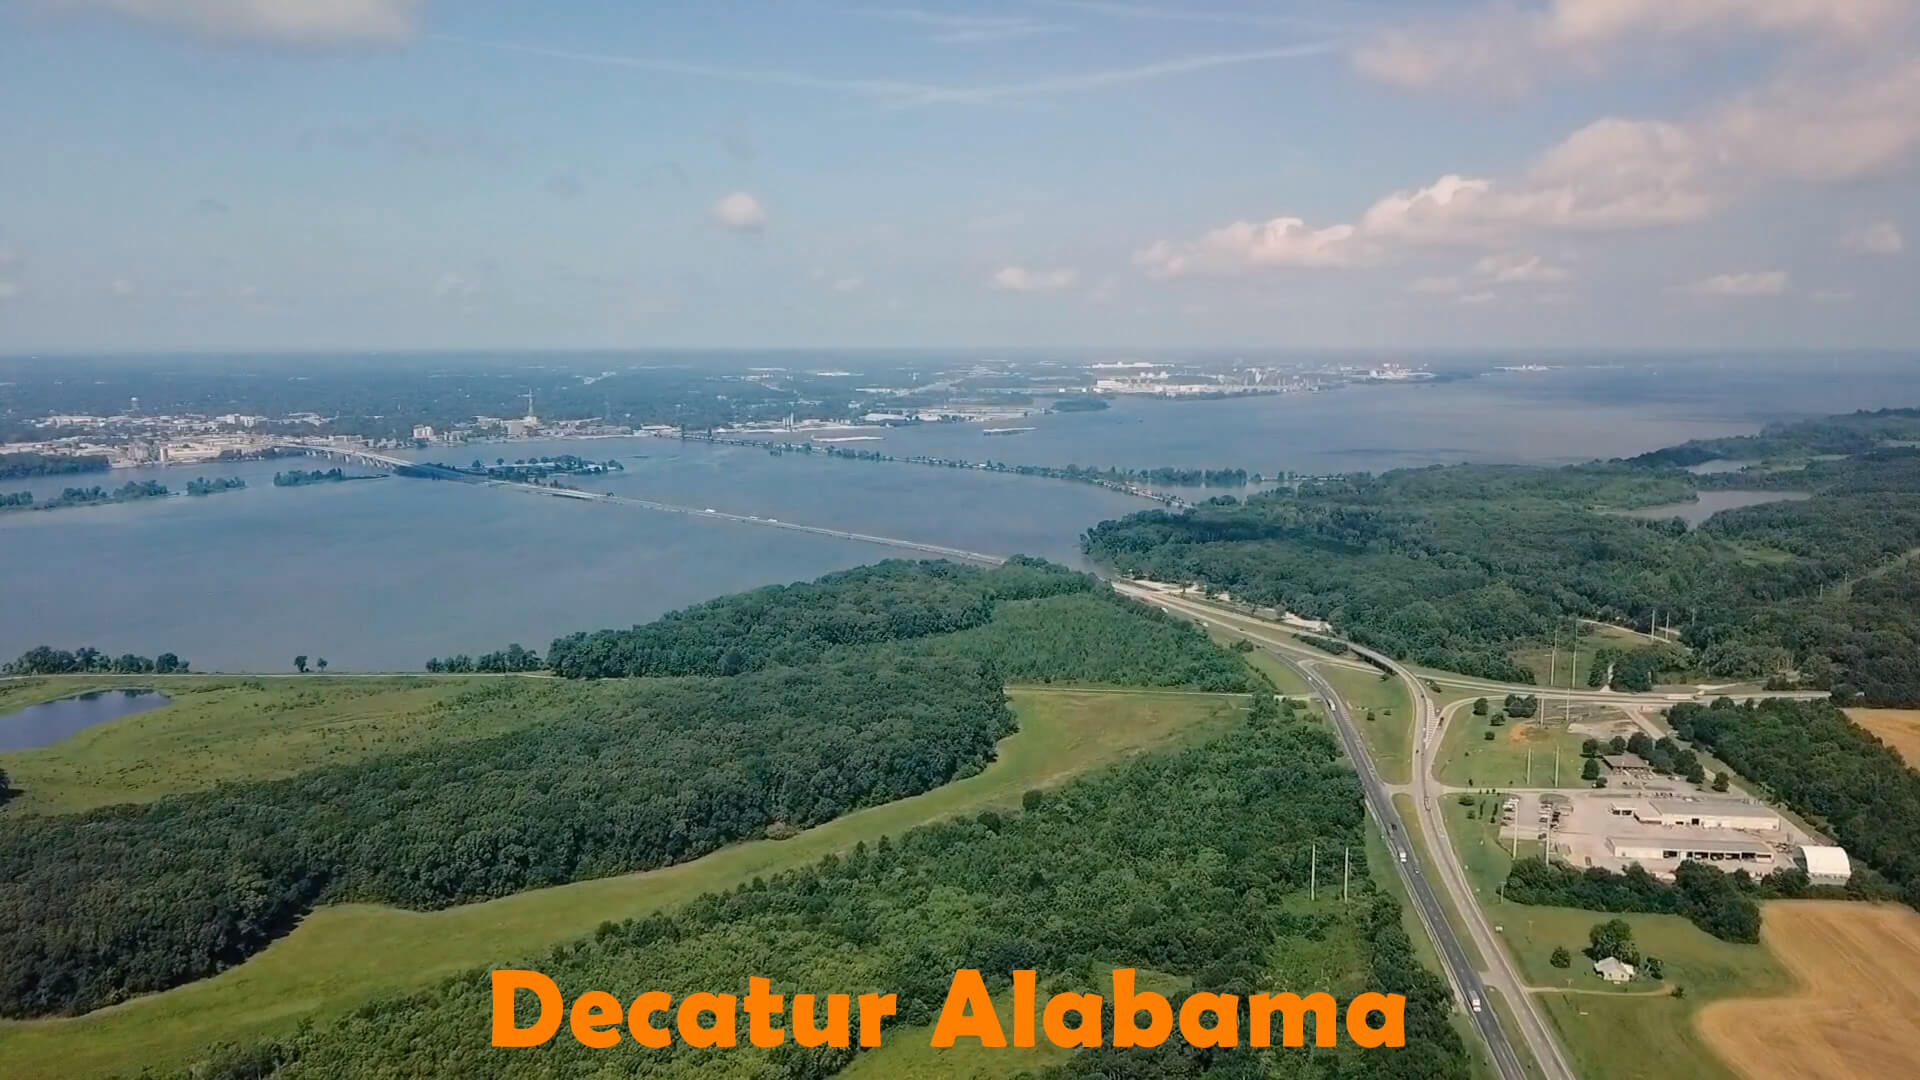 Decatur Alabama